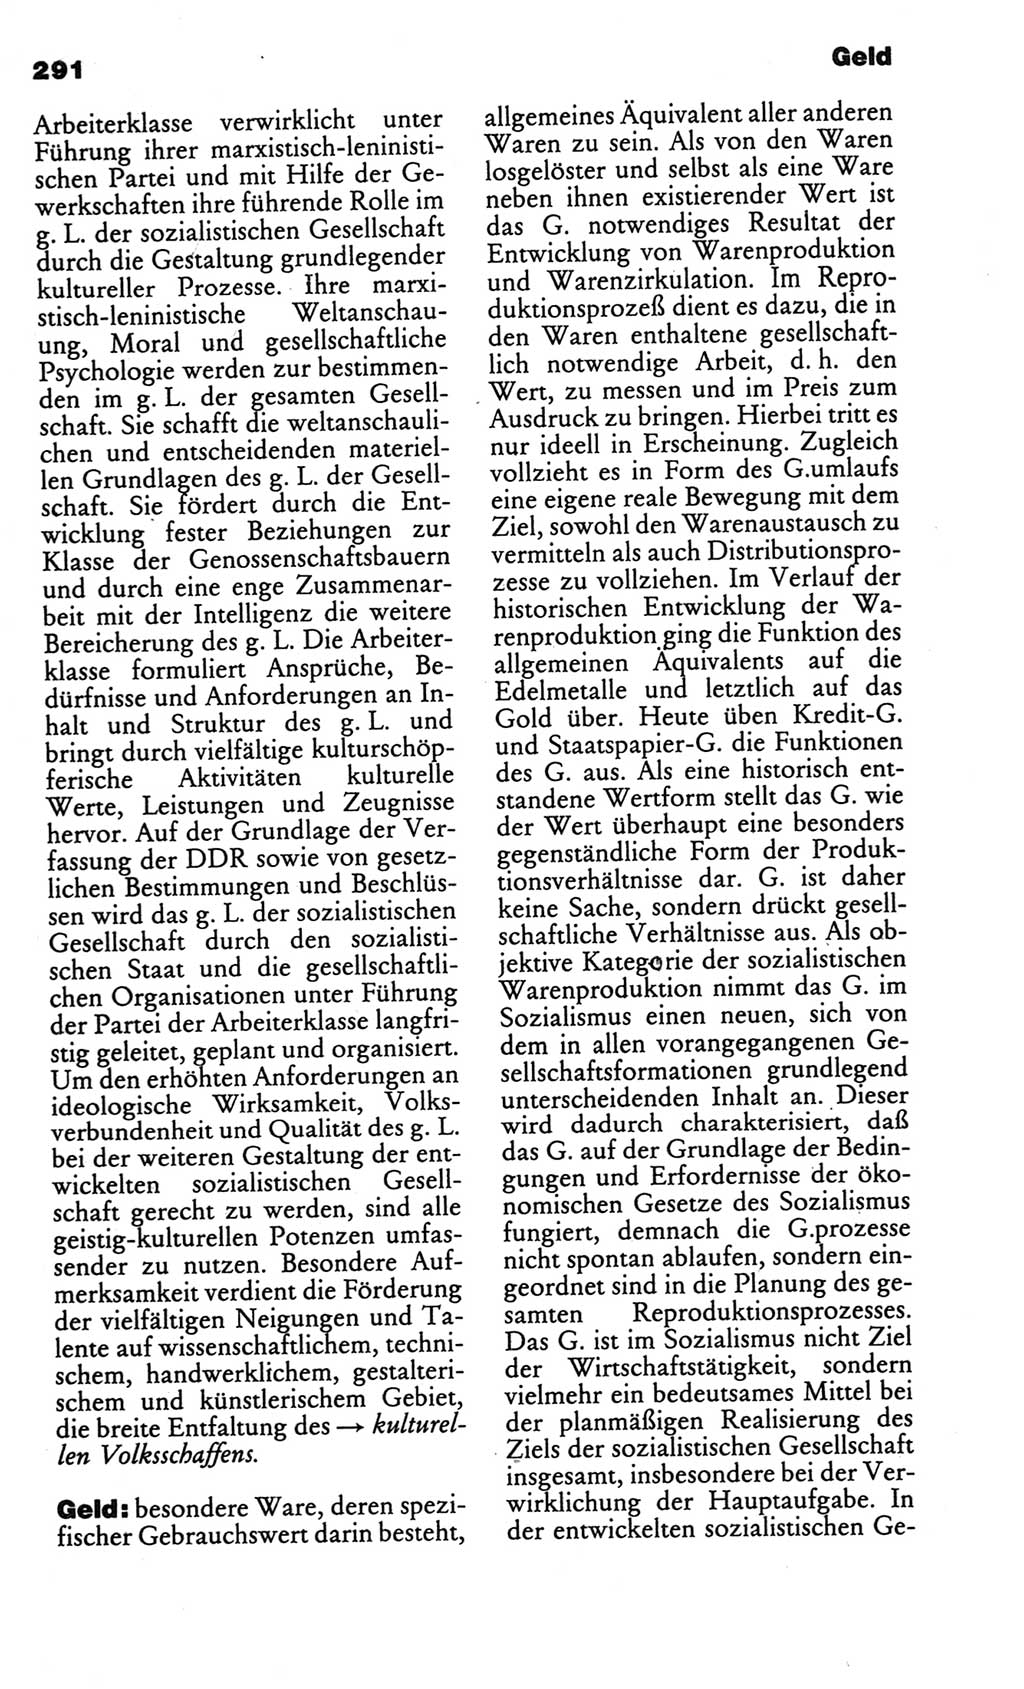 Kleines politisches Wörterbuch [Deutsche Demokratische Republik (DDR)] 1986, Seite 291 (Kl. pol. Wb. DDR 1986, S. 291)